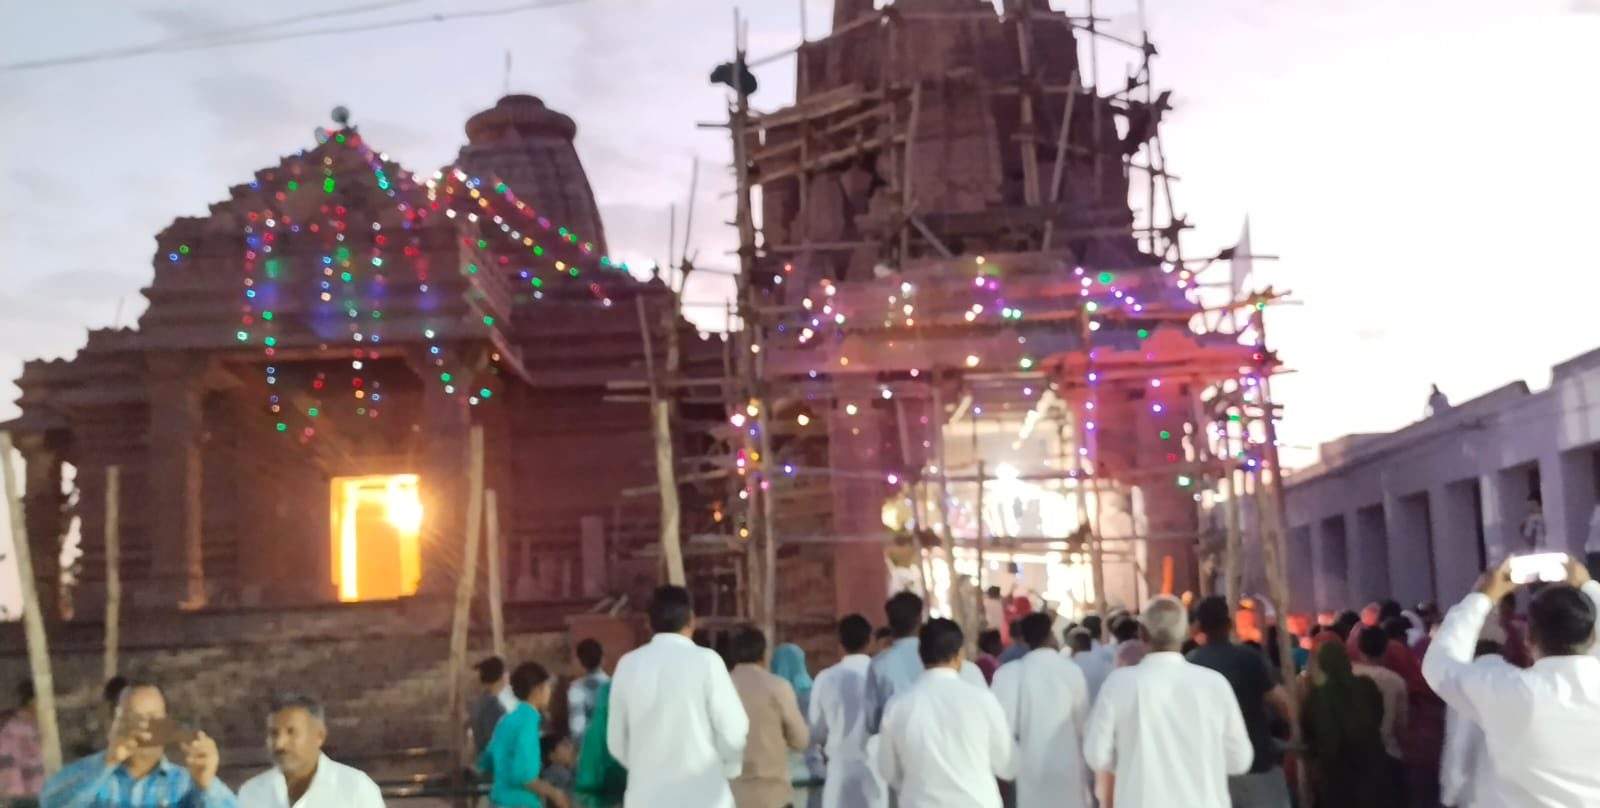 श्रीडूंगरगढ़ टाइम्स। मंदिर को रंग बिरंगी रोशनियों से सजाया गया।